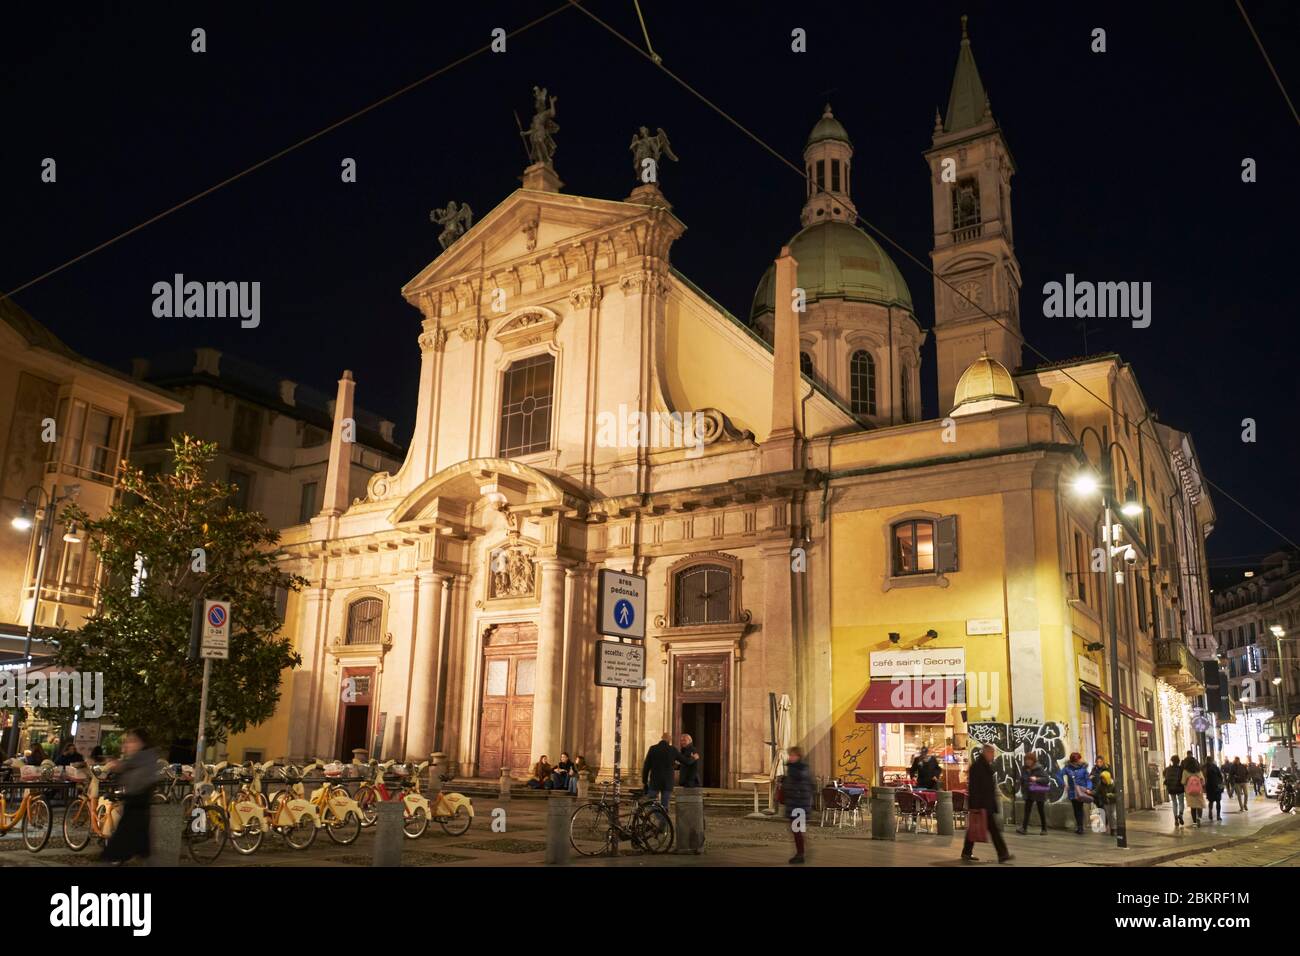 Italy, Lombardy, Milan, via Torino, San Giorgio al Palazzo Church (Chiesa di San Giorgio al Palazzo) at night Stock Photo